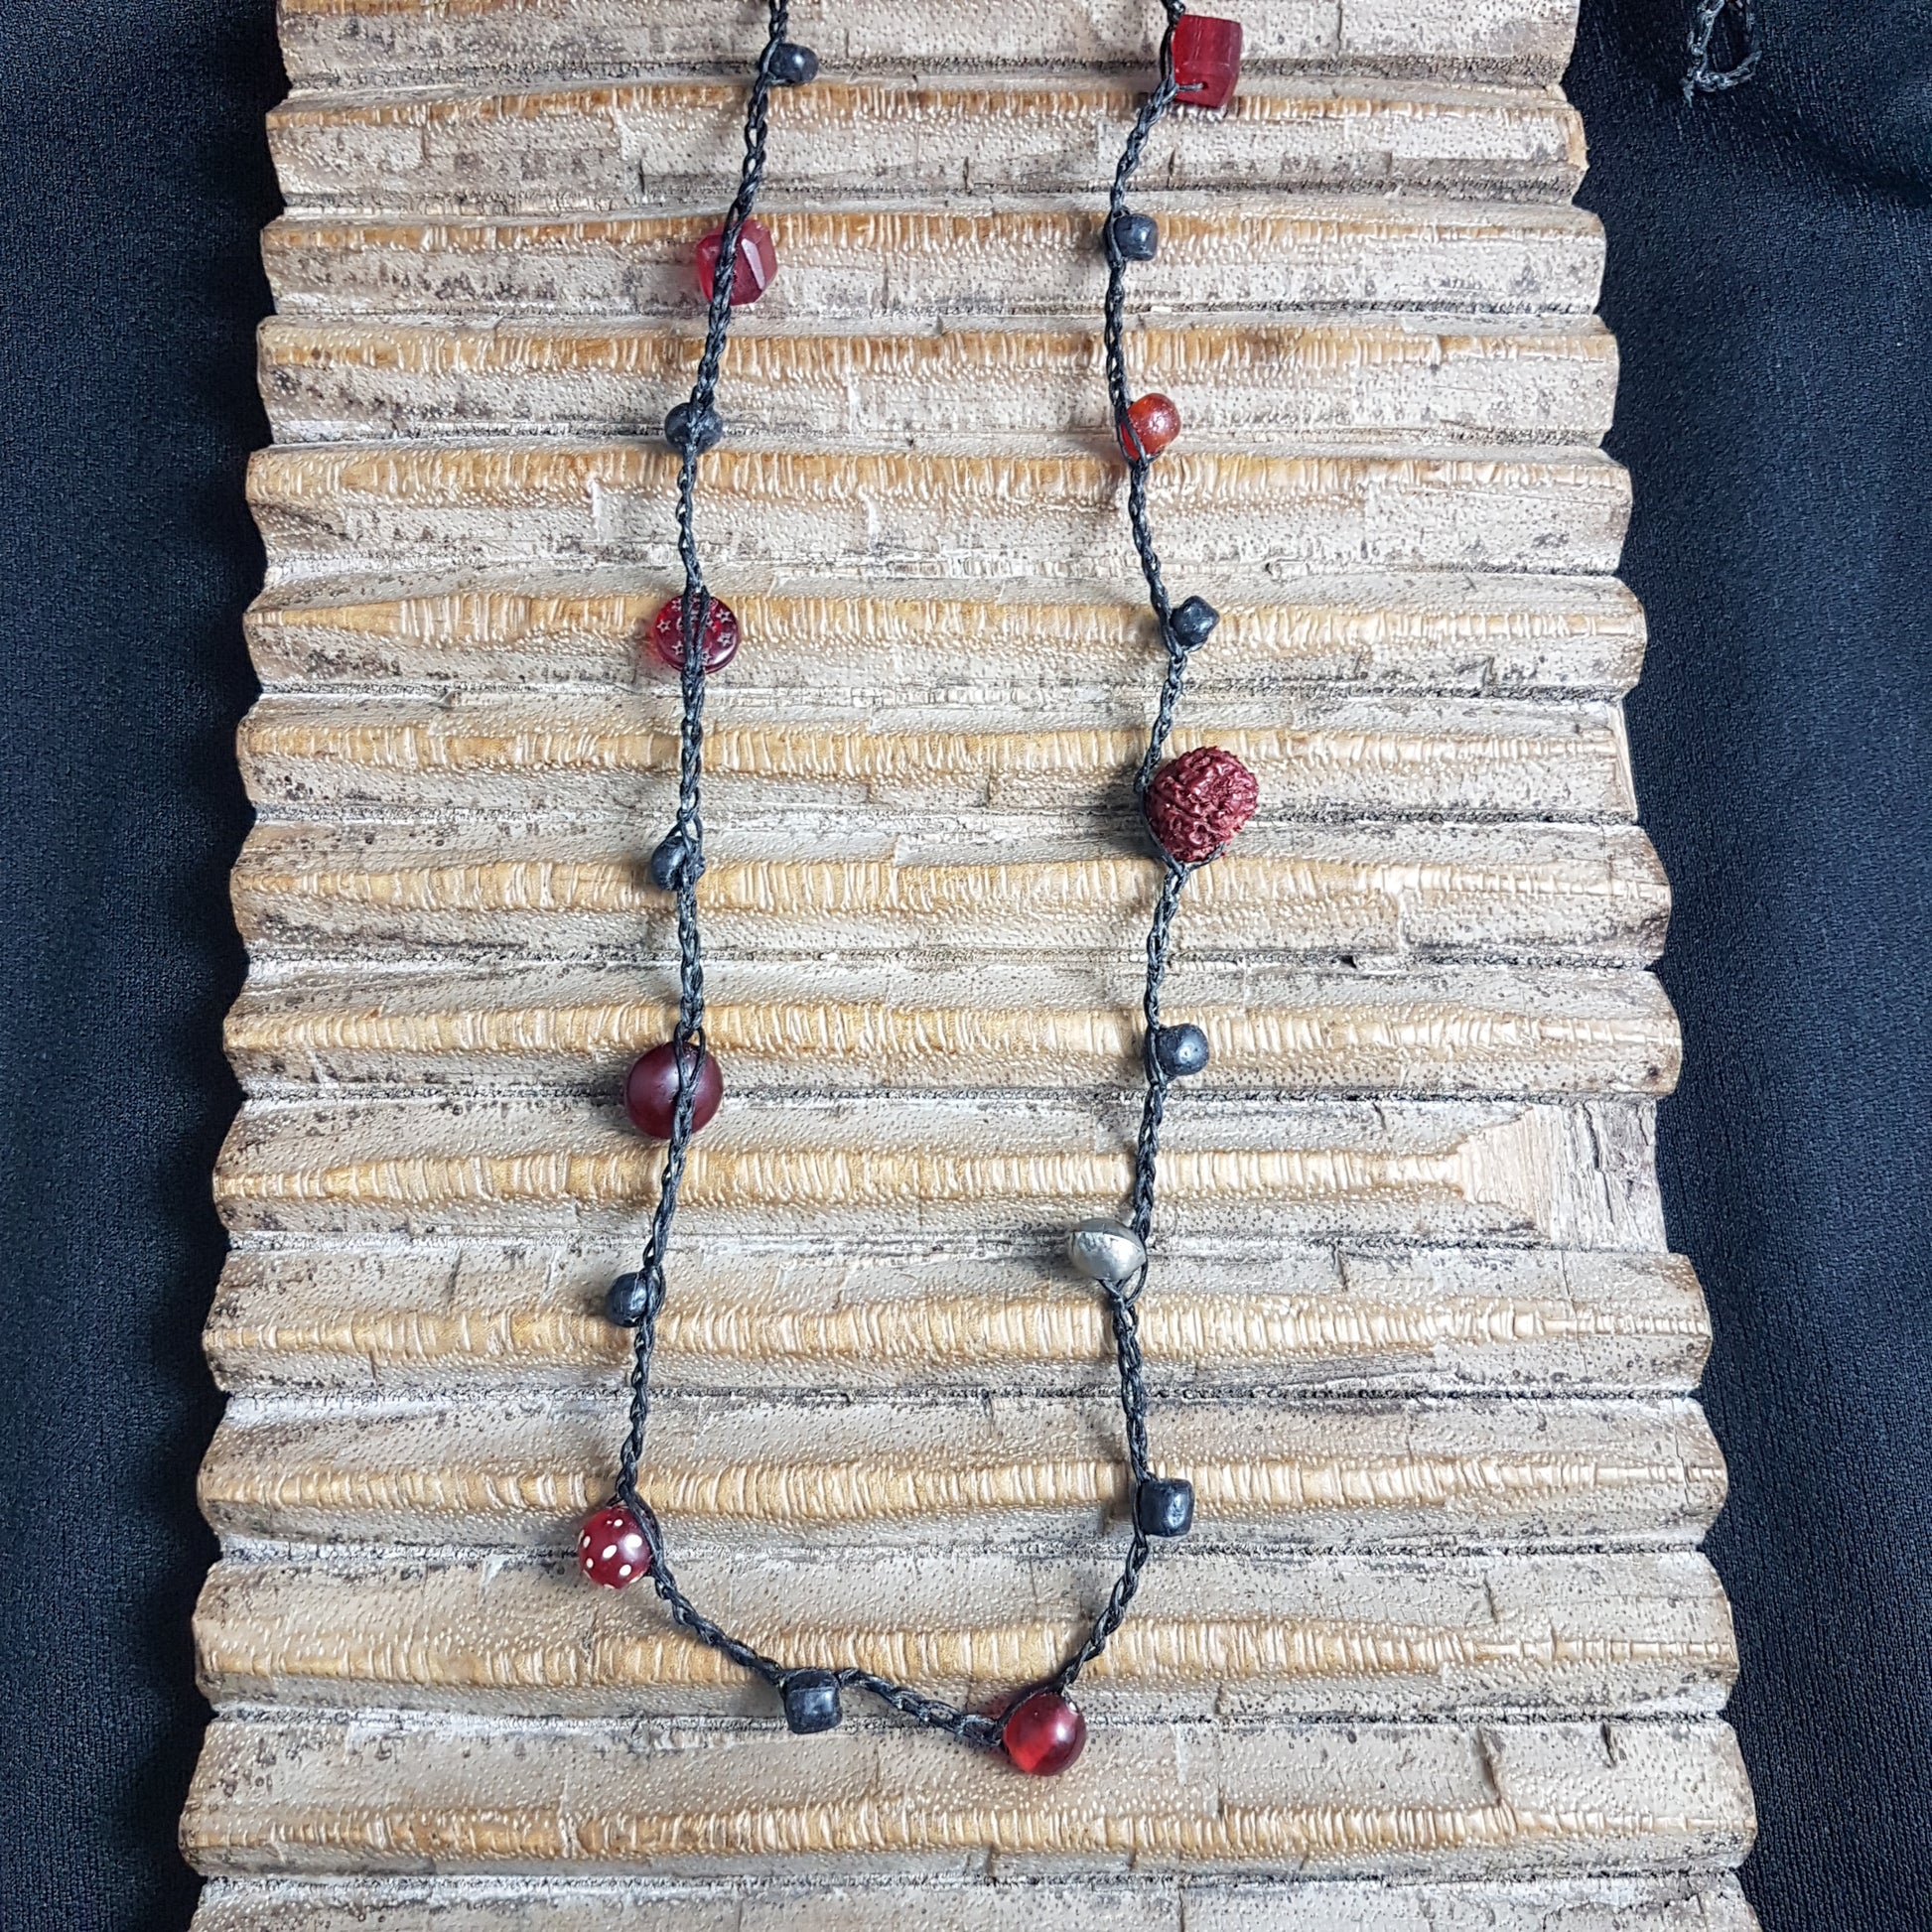 Lange handgehäkelte Kette mit Rudraksha-Samen aus nepalesischen Gebets-Malas, schwarzen indonesischen Wickelglasperlen, Harzperlen in Rottönen und roten Glasperlen von der Insel Java auf Baumwolle